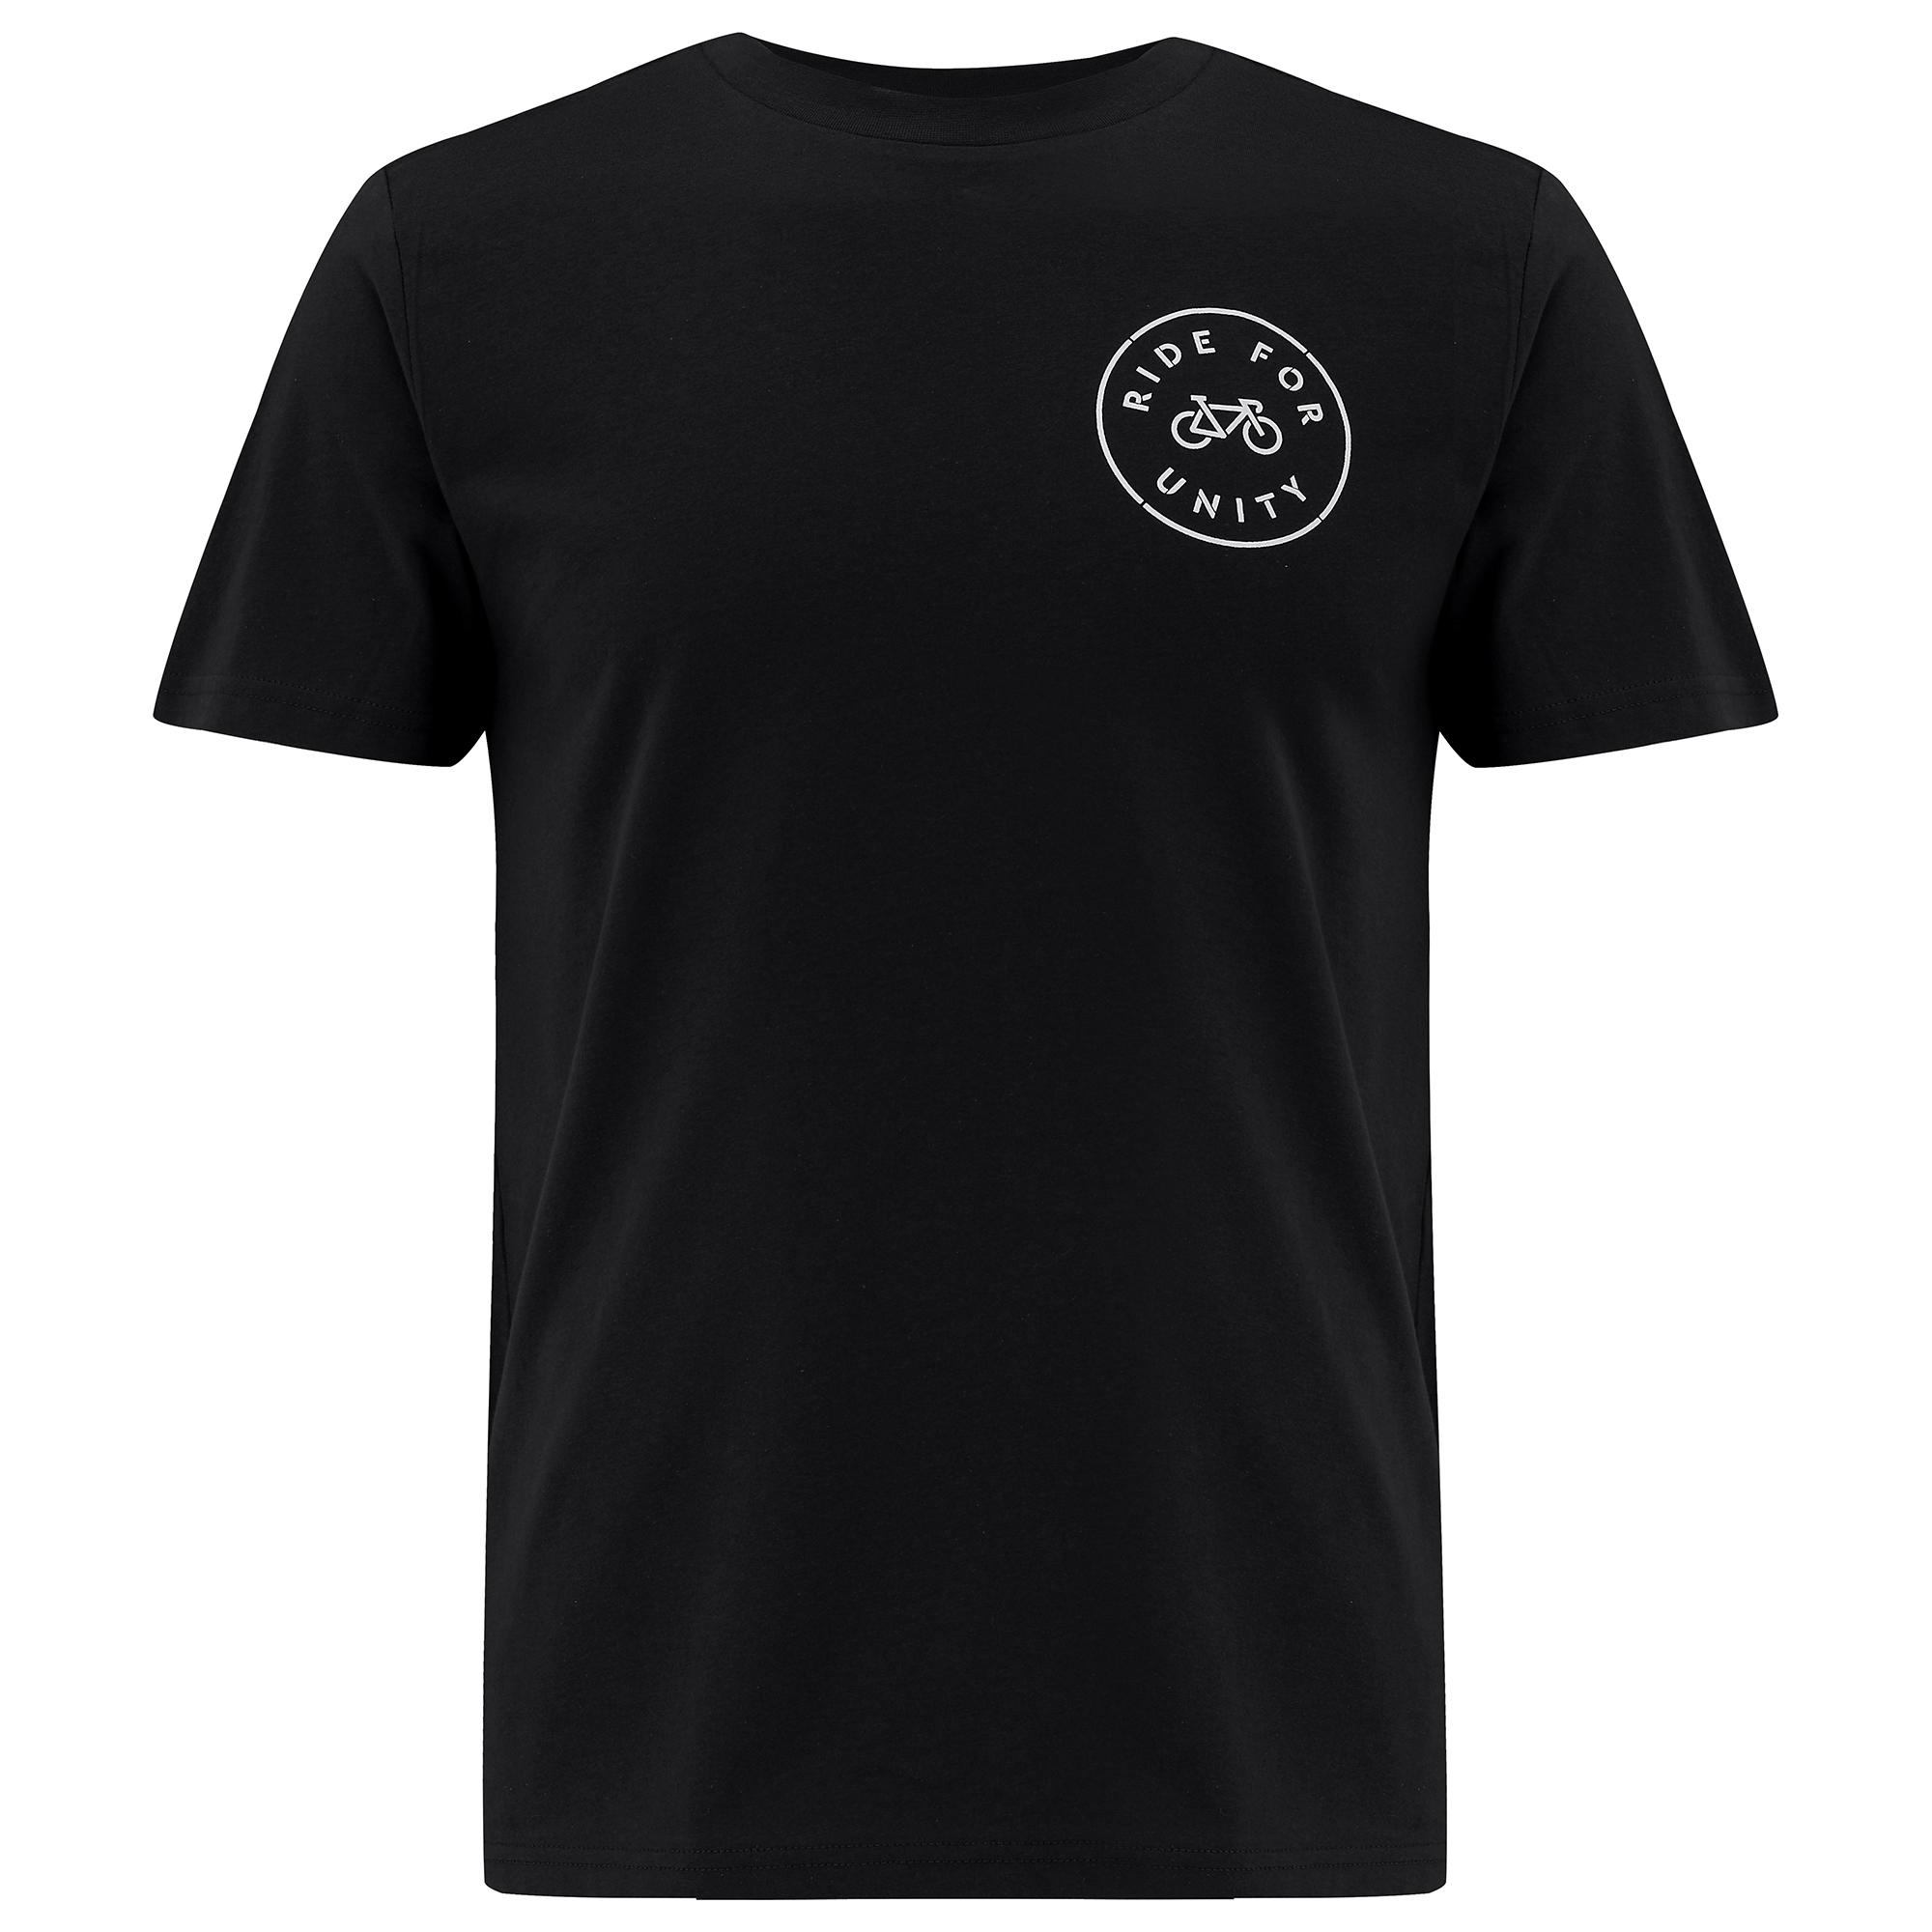 Dhb Ride For Unity T-shirt - Black